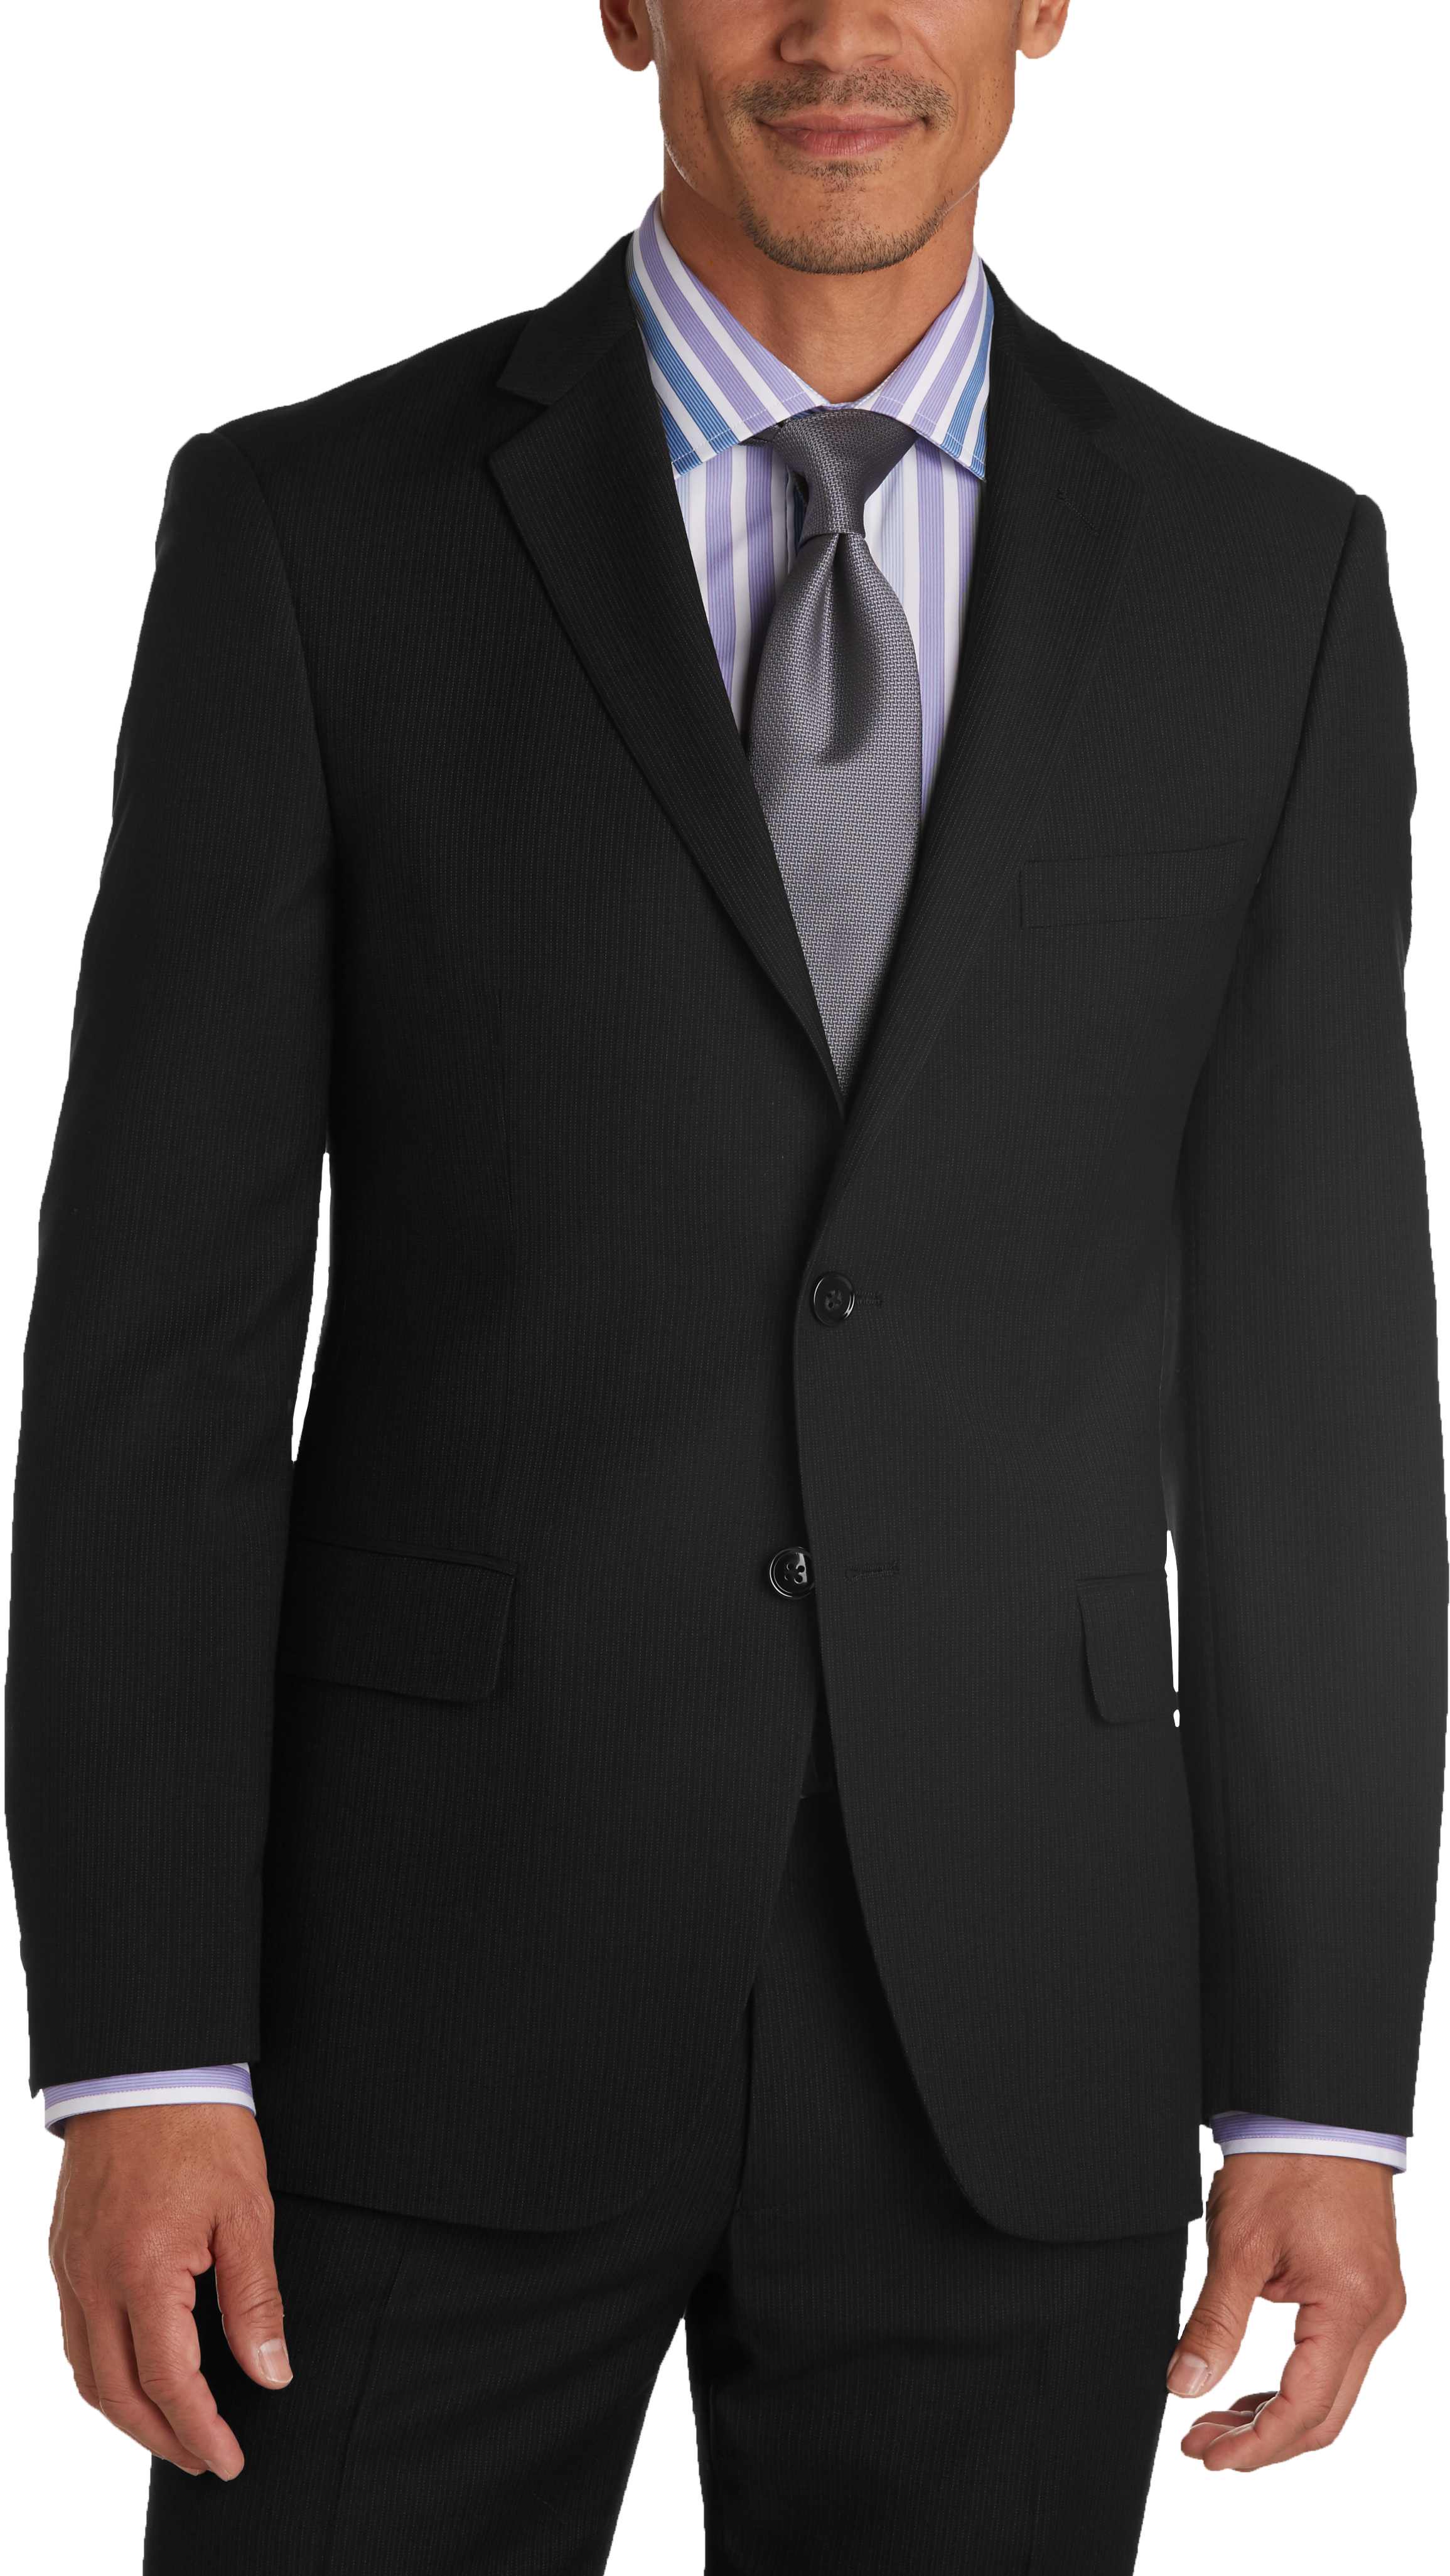 Joseph Abboud White Label Black Stripe Slim Fit Suit (Outlet) - Slim ...